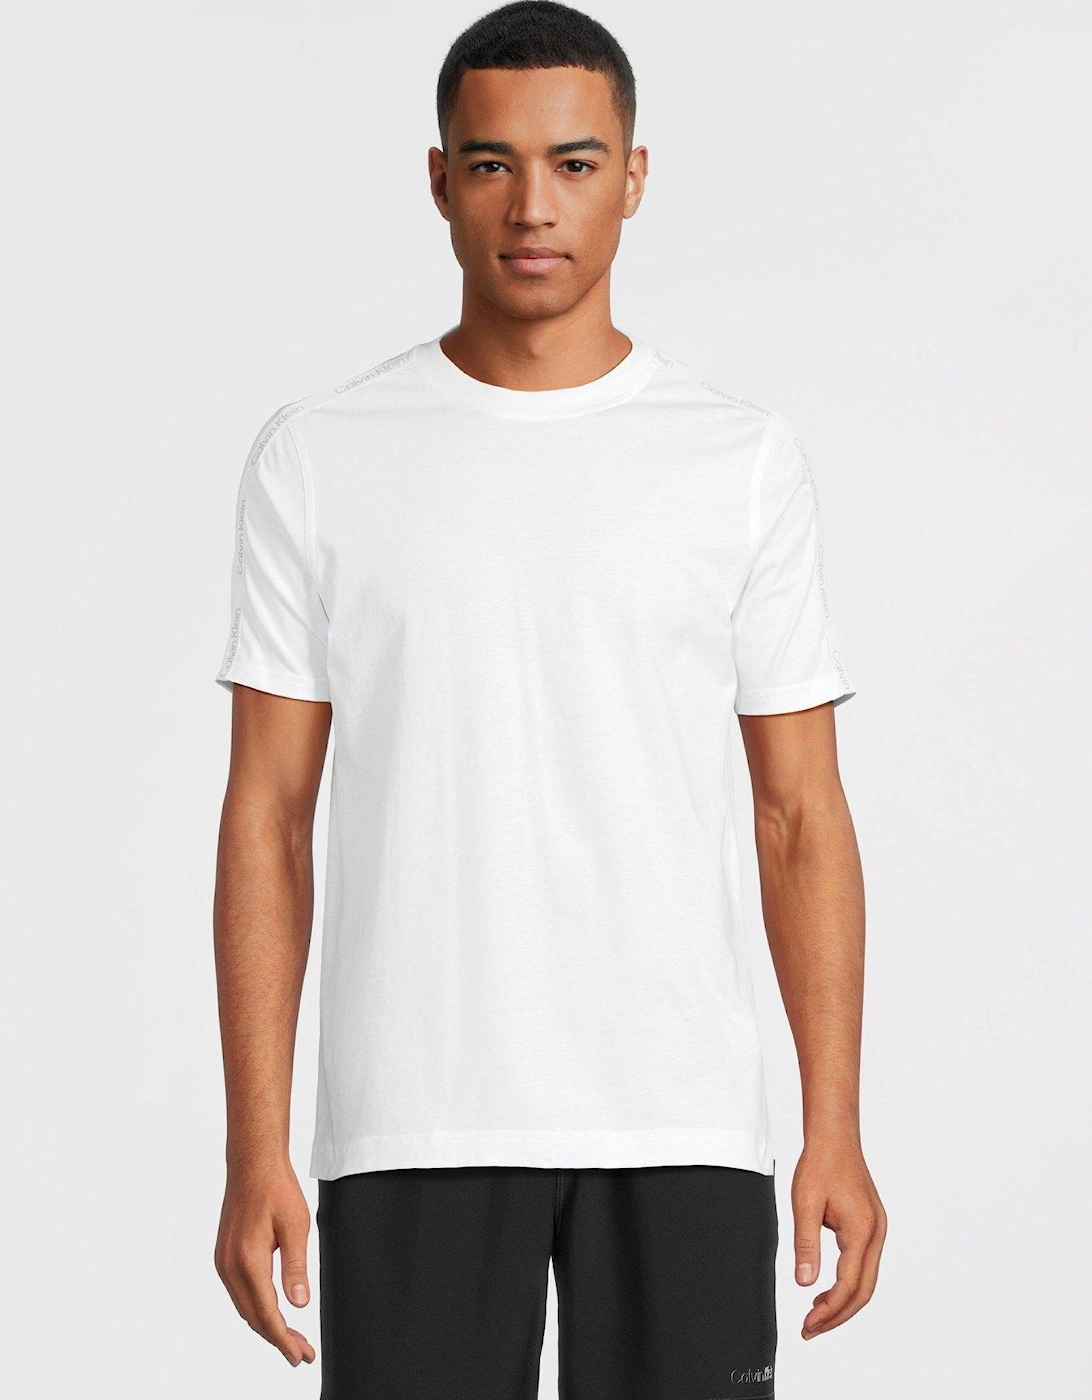 CK Sport Tape Logo Short Sleeve T-shirt - White, 6 of 5